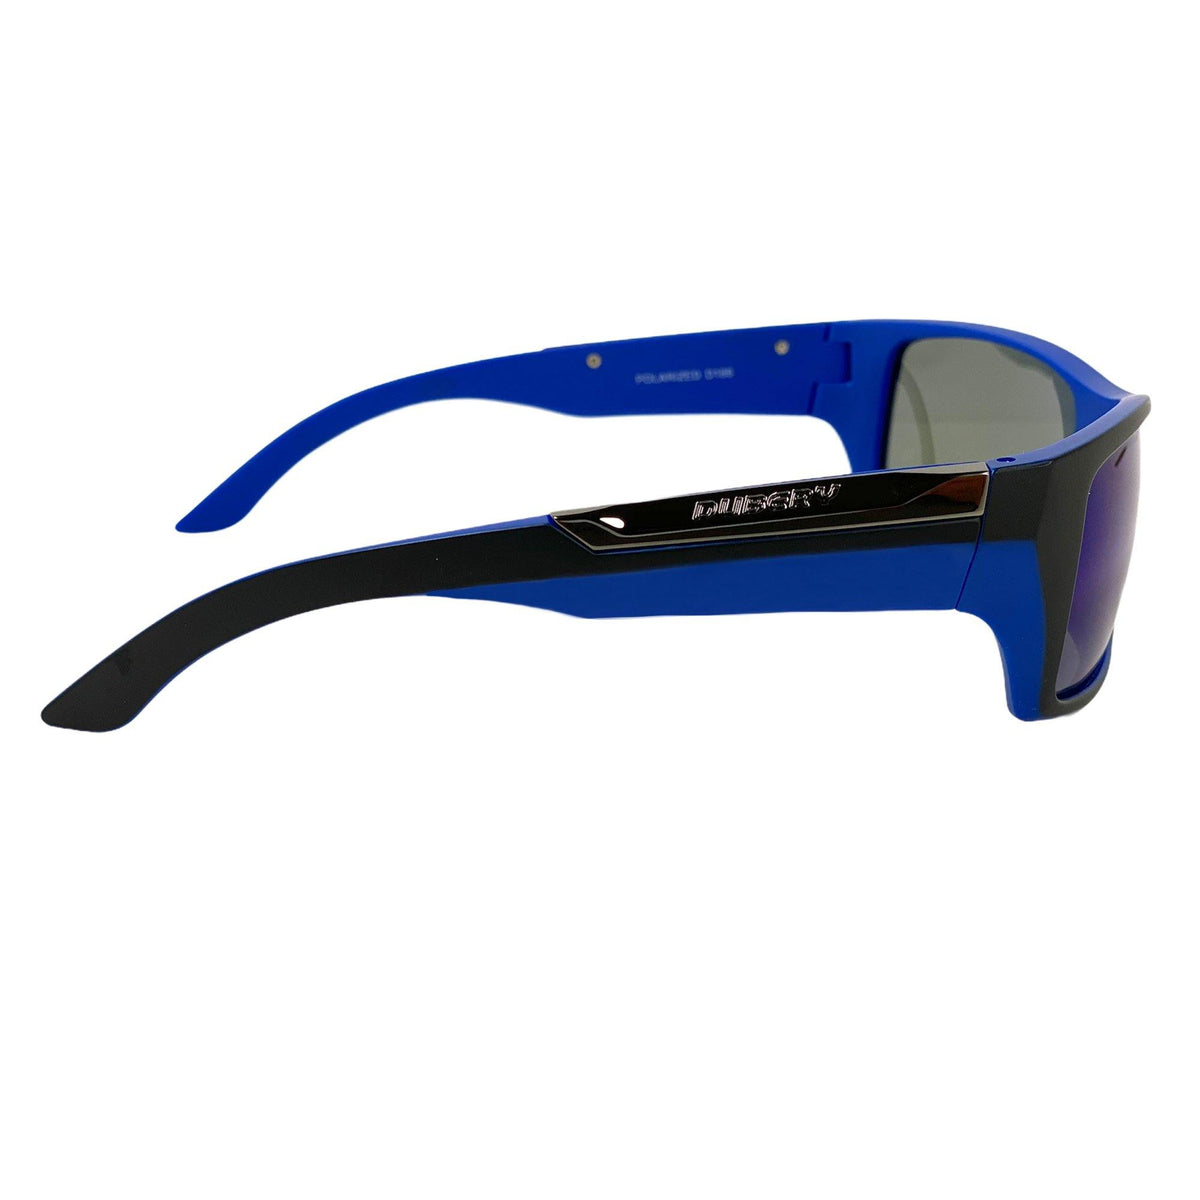 Best Cycling Sunglasses 2020– Dubery Optics Sunglasses